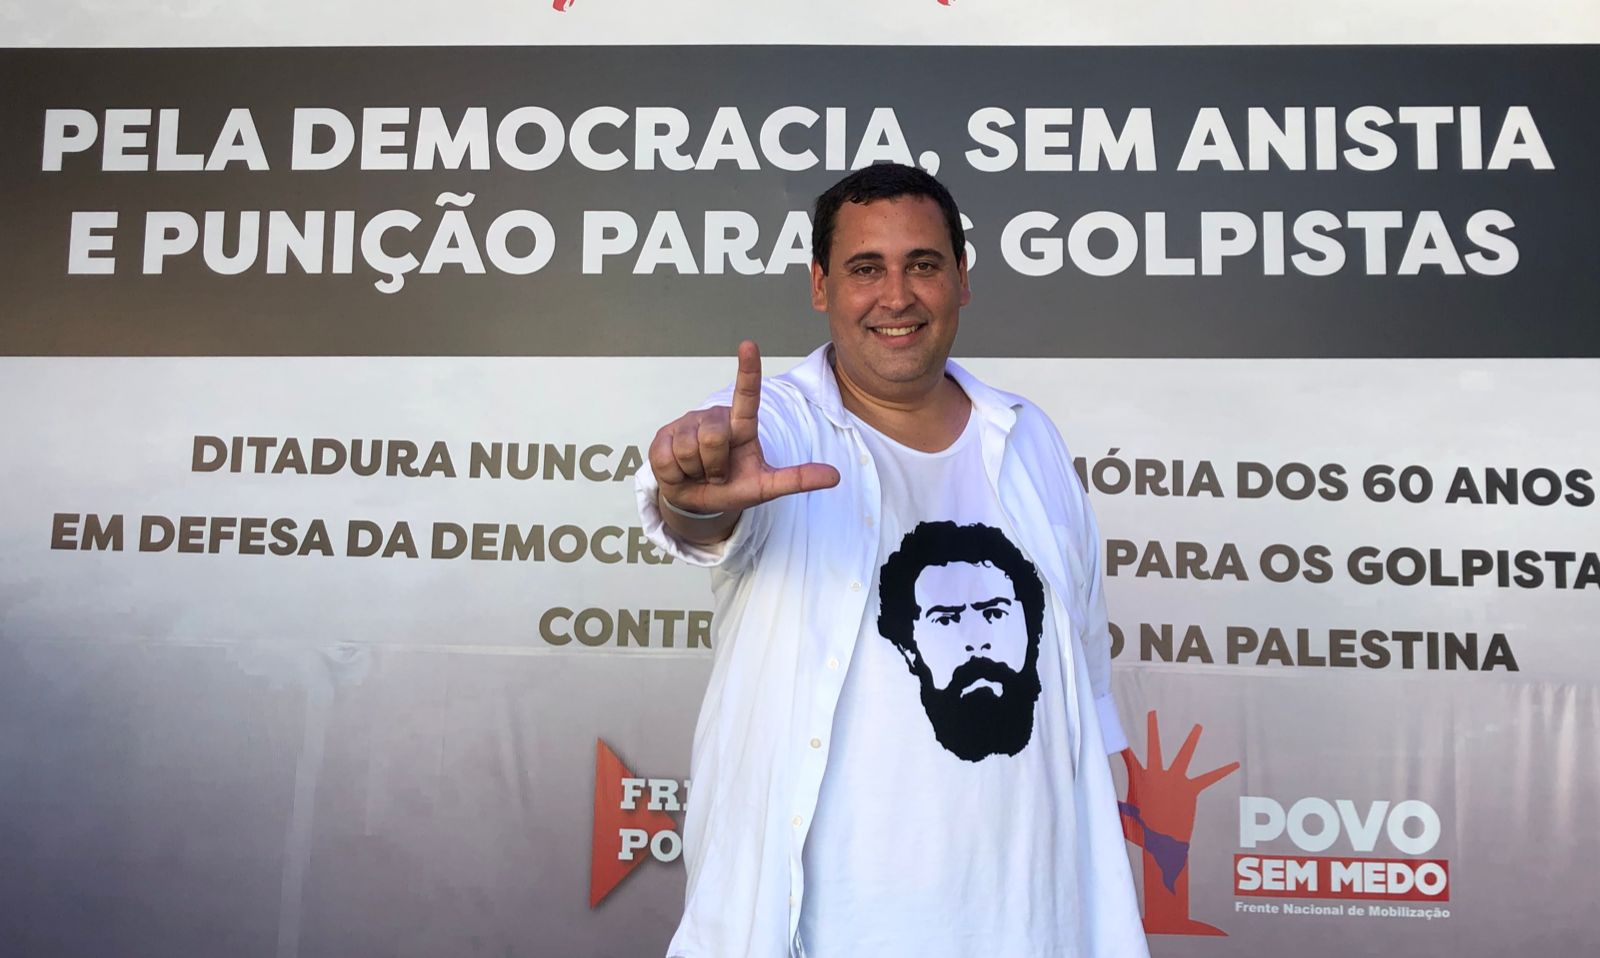 "Dia de celebrar a vitória da república brasileira sobre a tentativa de golpe", diz Éden